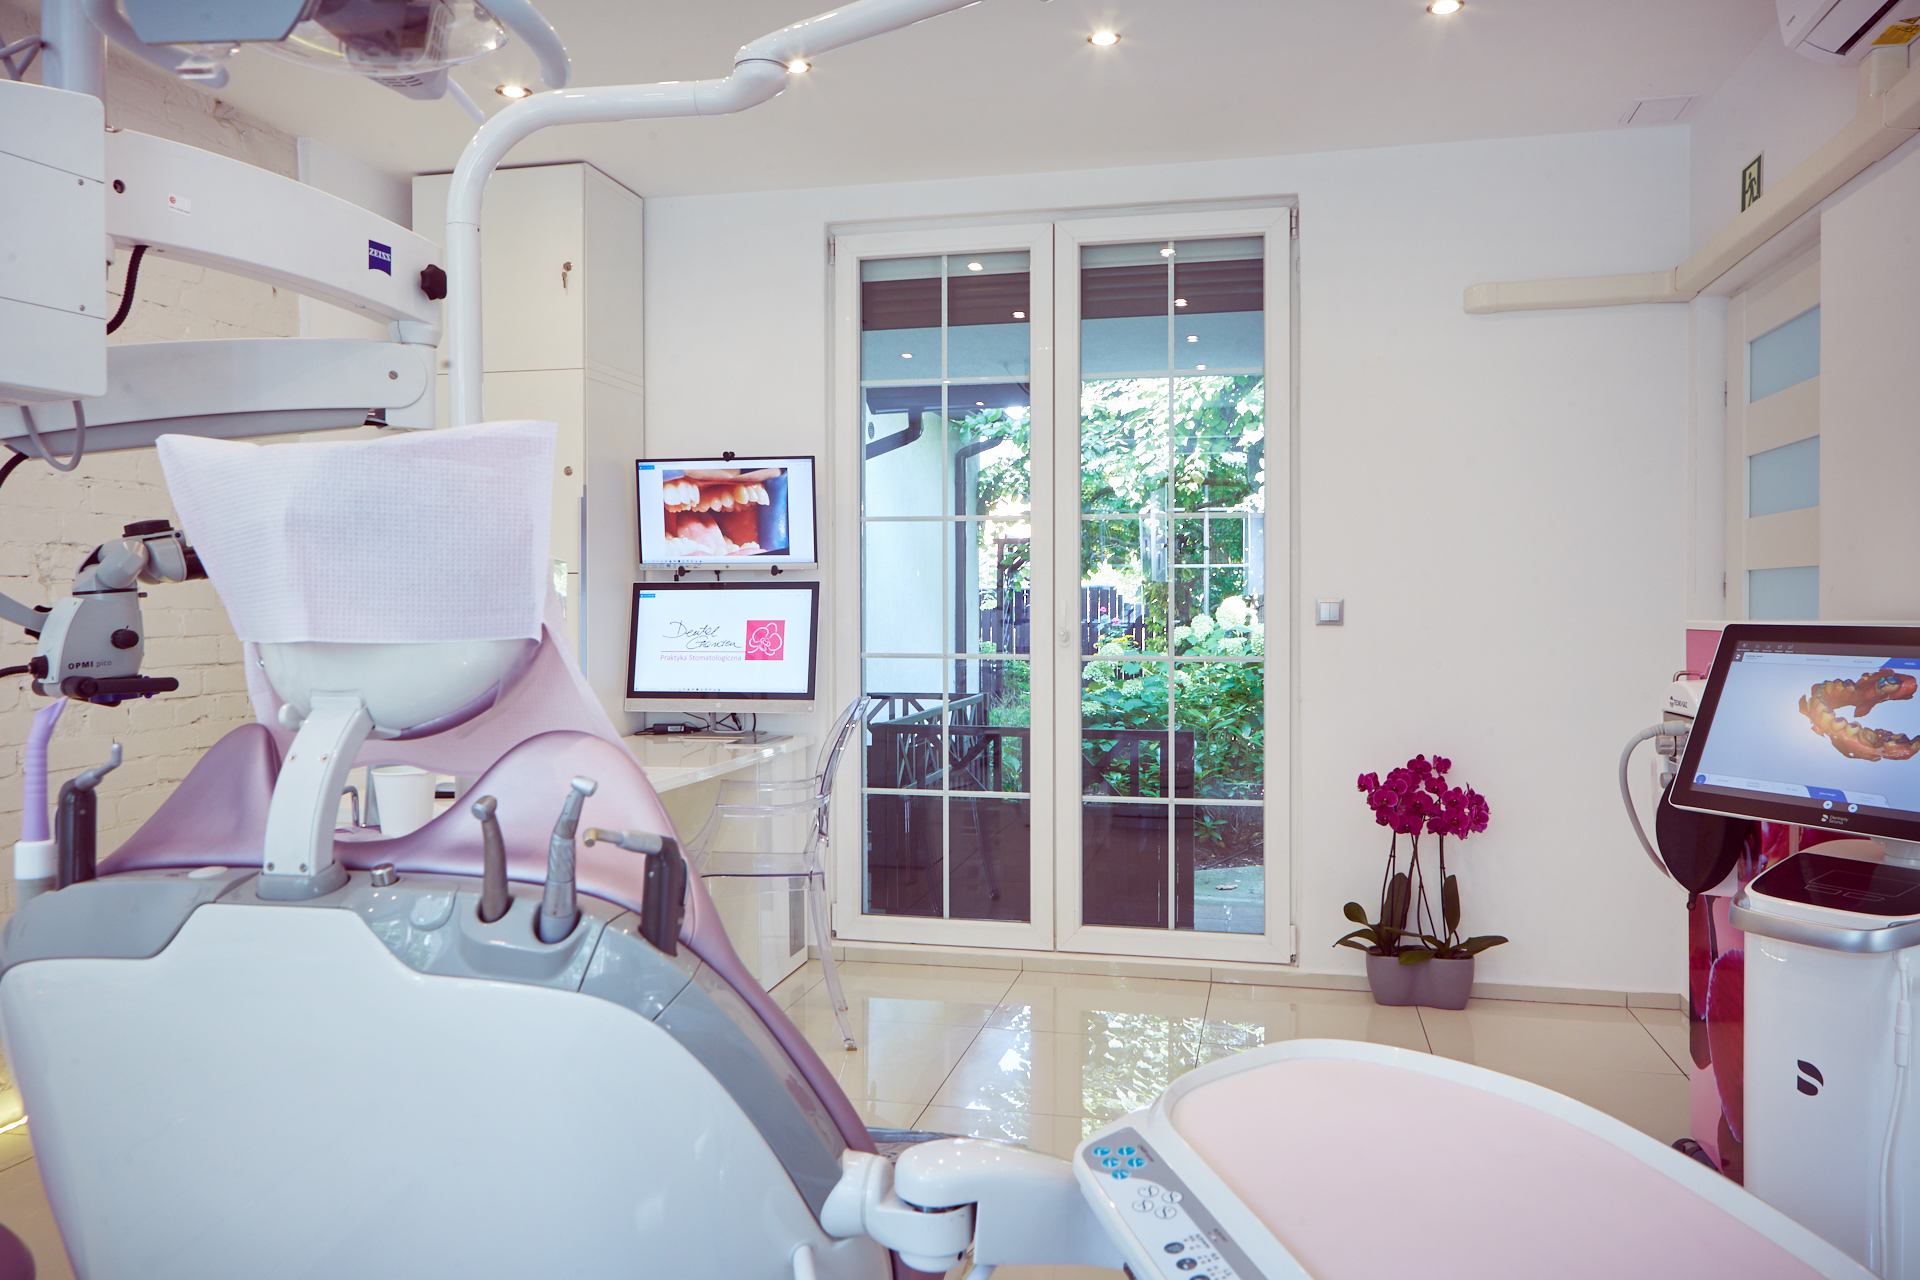 dental garden stomatolog dentysta bydgoszcz home